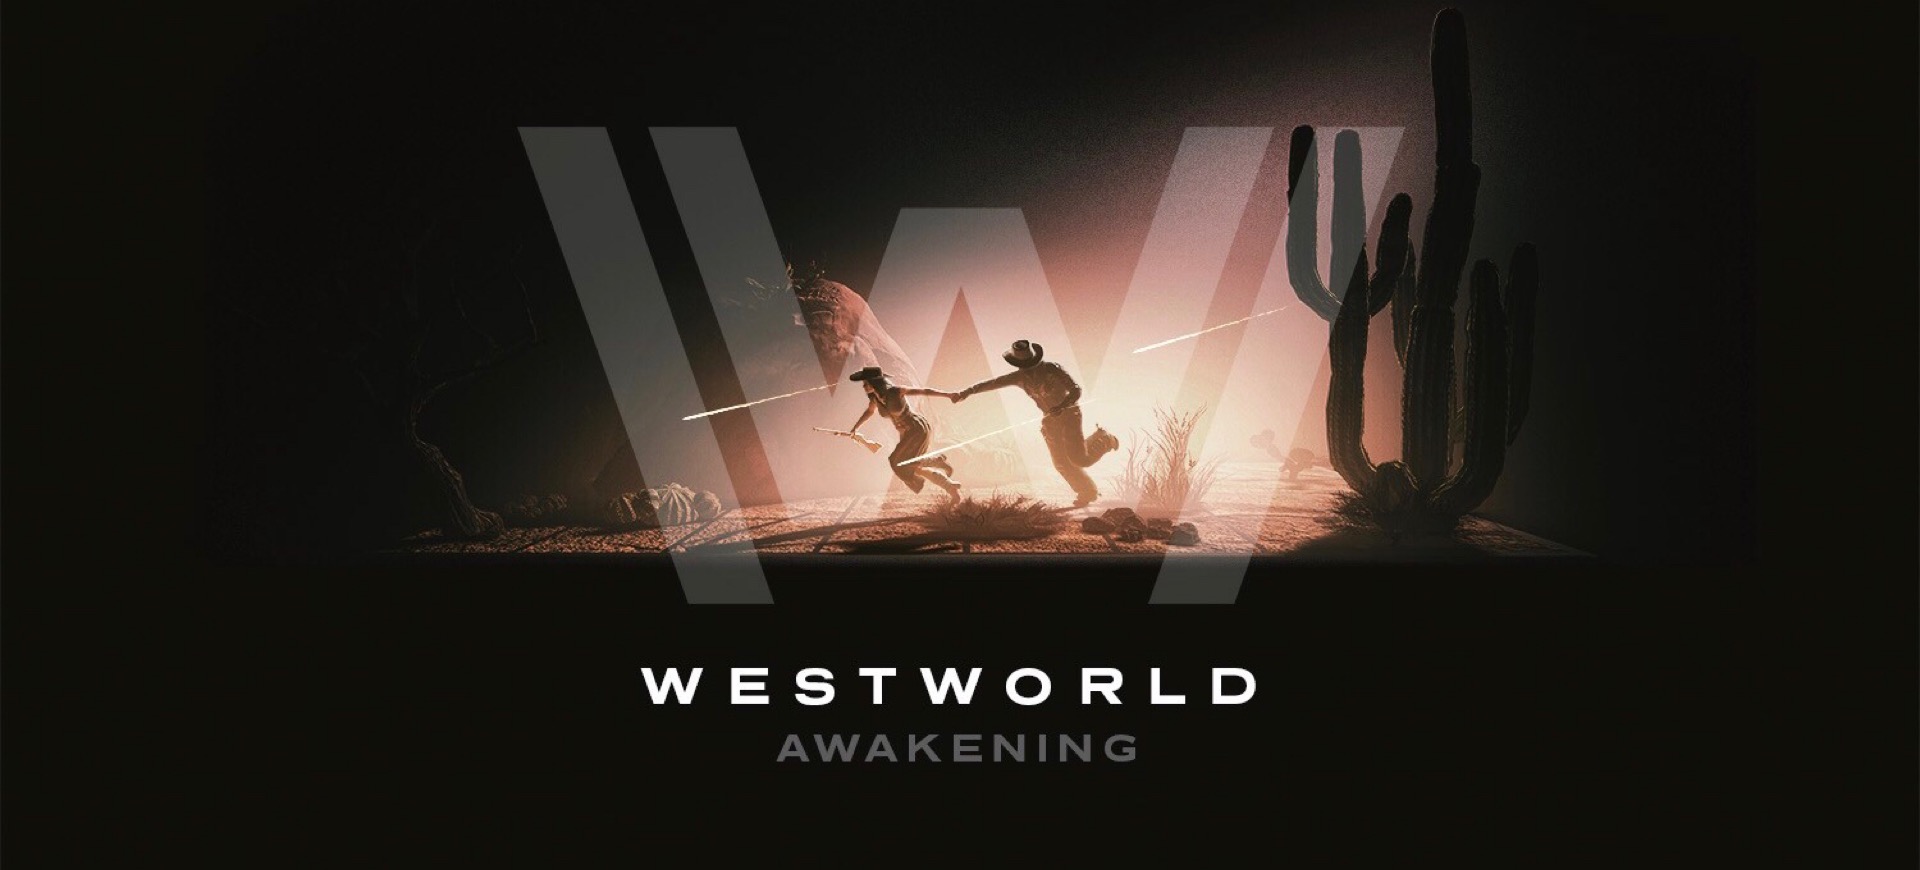 Westworld Awakening, tựa game thực tế ảo của Westworld được công bố